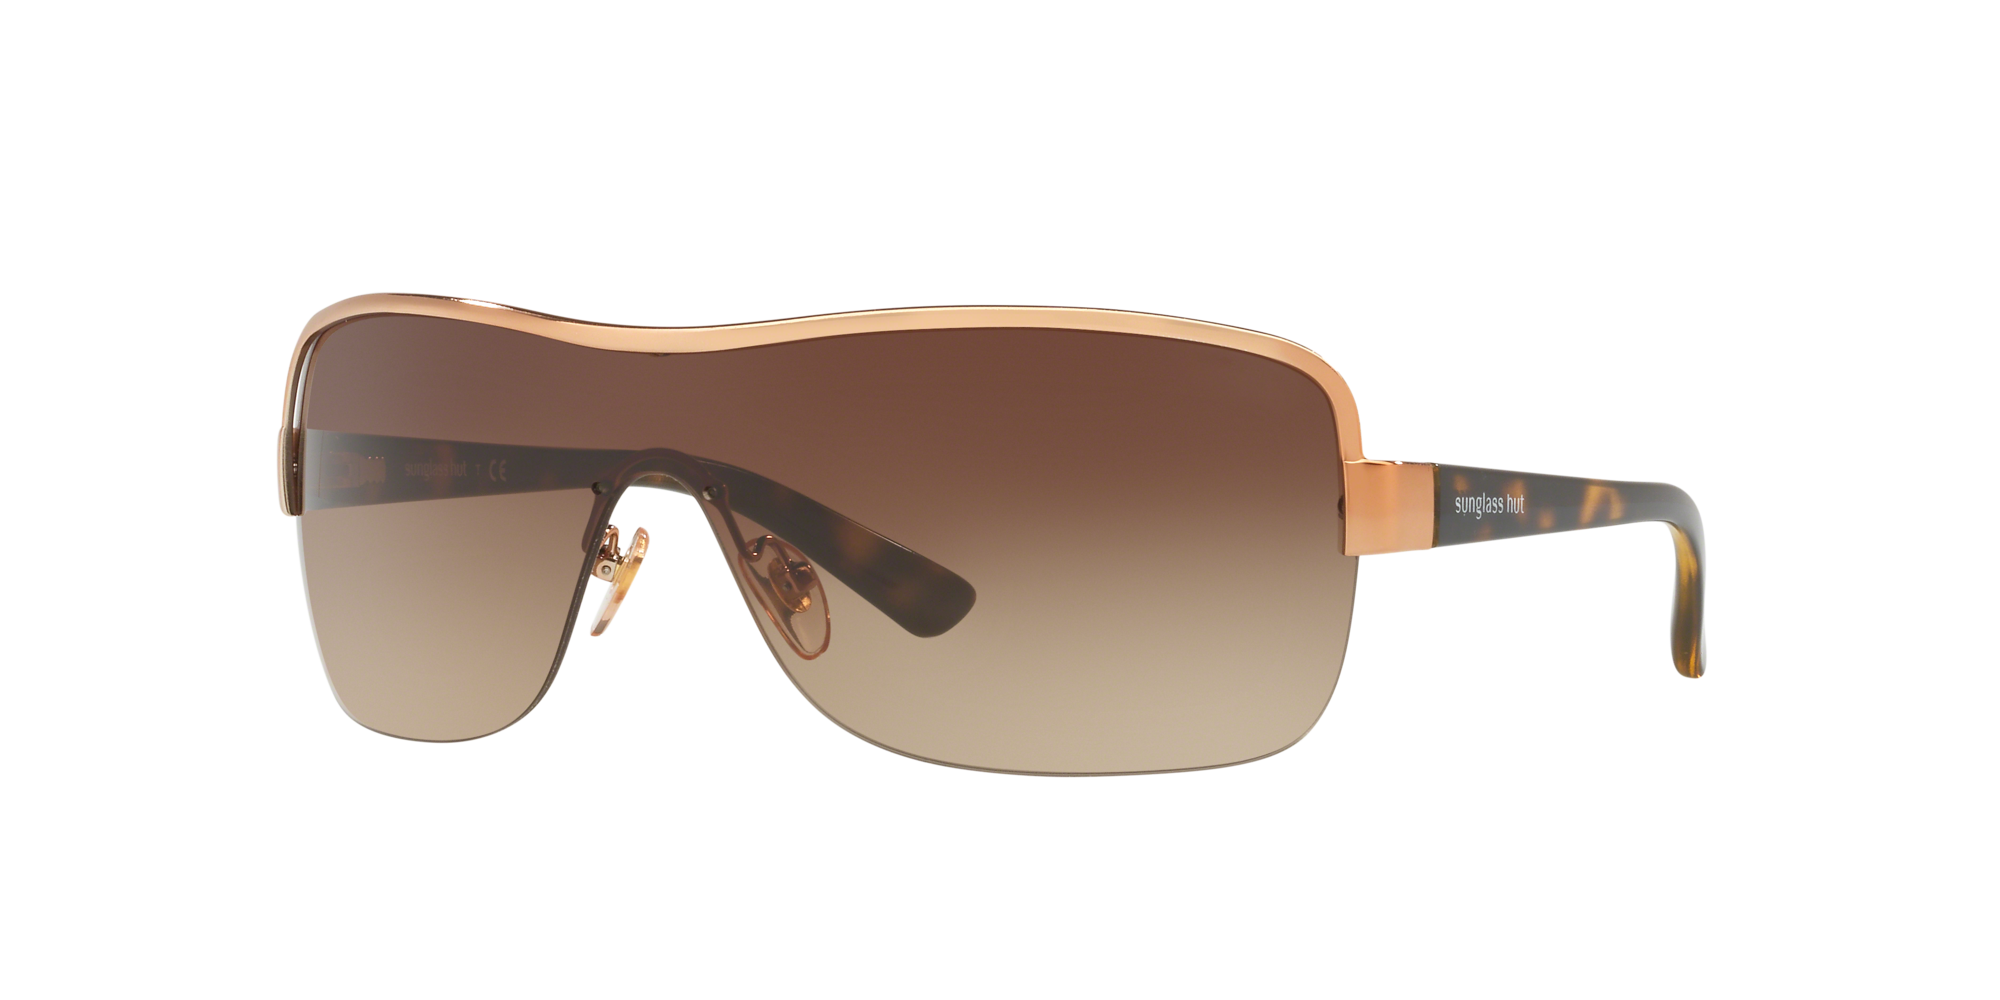 Ray-Ban RB4362 55 Brown & Light Brown Sunglasses | Sunglass Hut USA